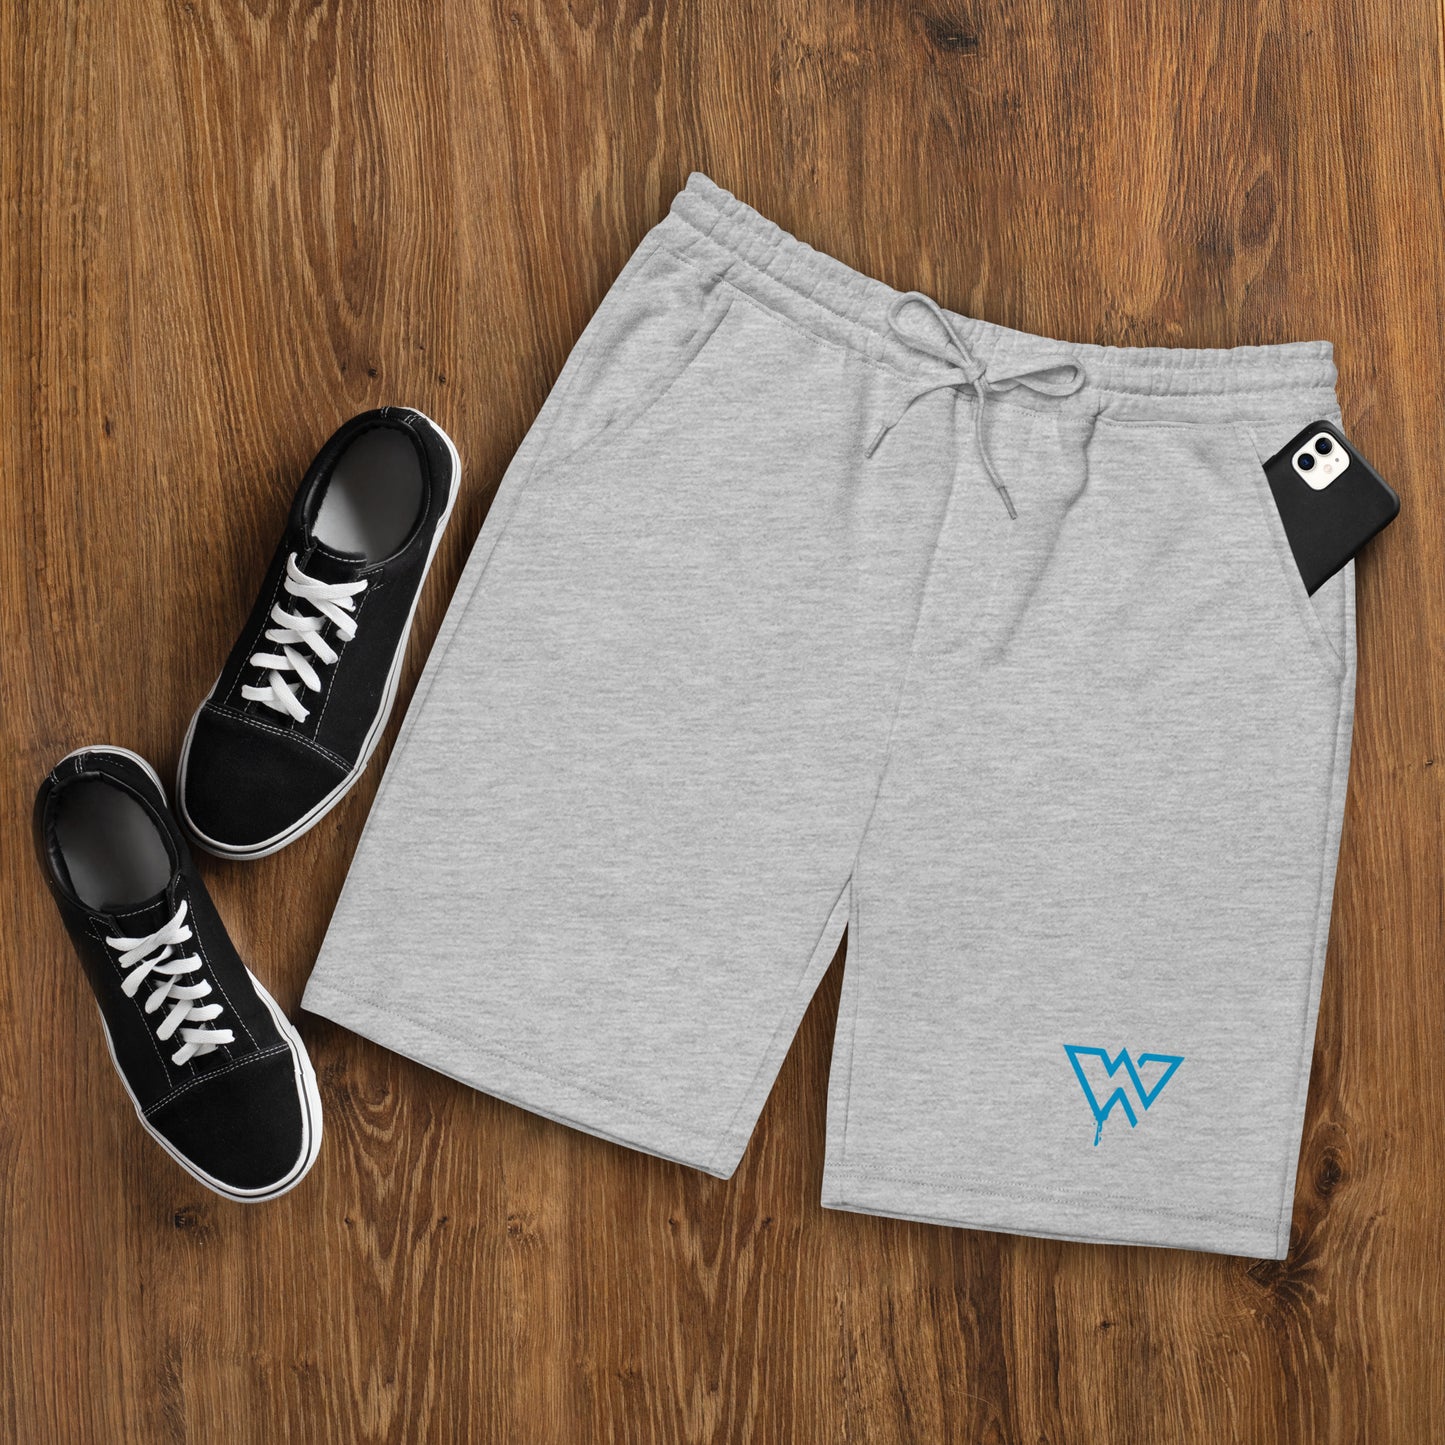 Men's fleece "W" shorts